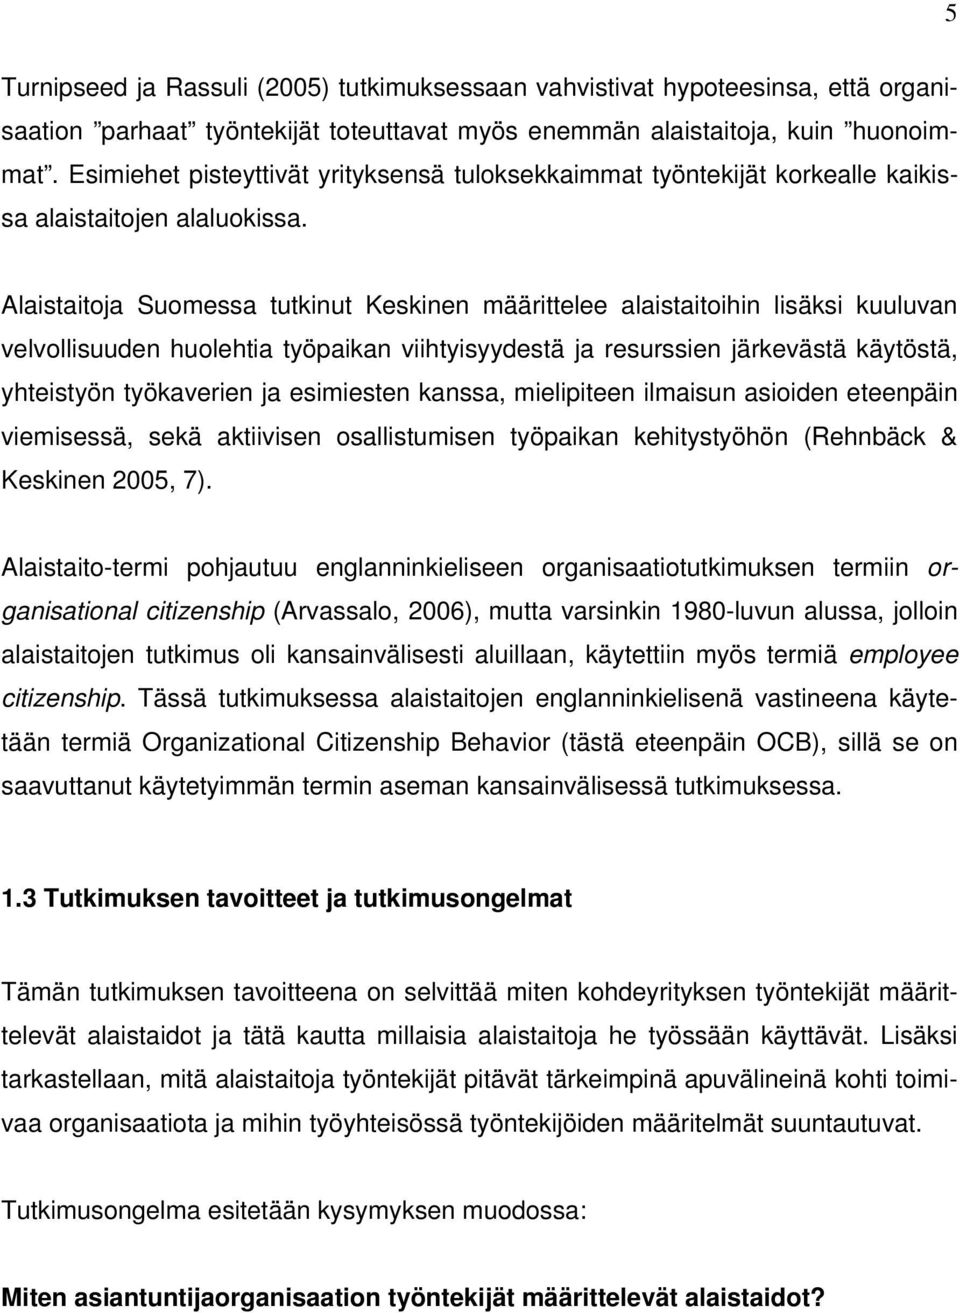 Alaistaitoja Suomessa tutkinut Keskinen määrittelee alaistaitoihin lisäksi kuuluvan velvollisuuden huolehtia työpaikan viihtyisyydestä ja resurssien järkevästä käytöstä, yhteistyön työkaverien ja